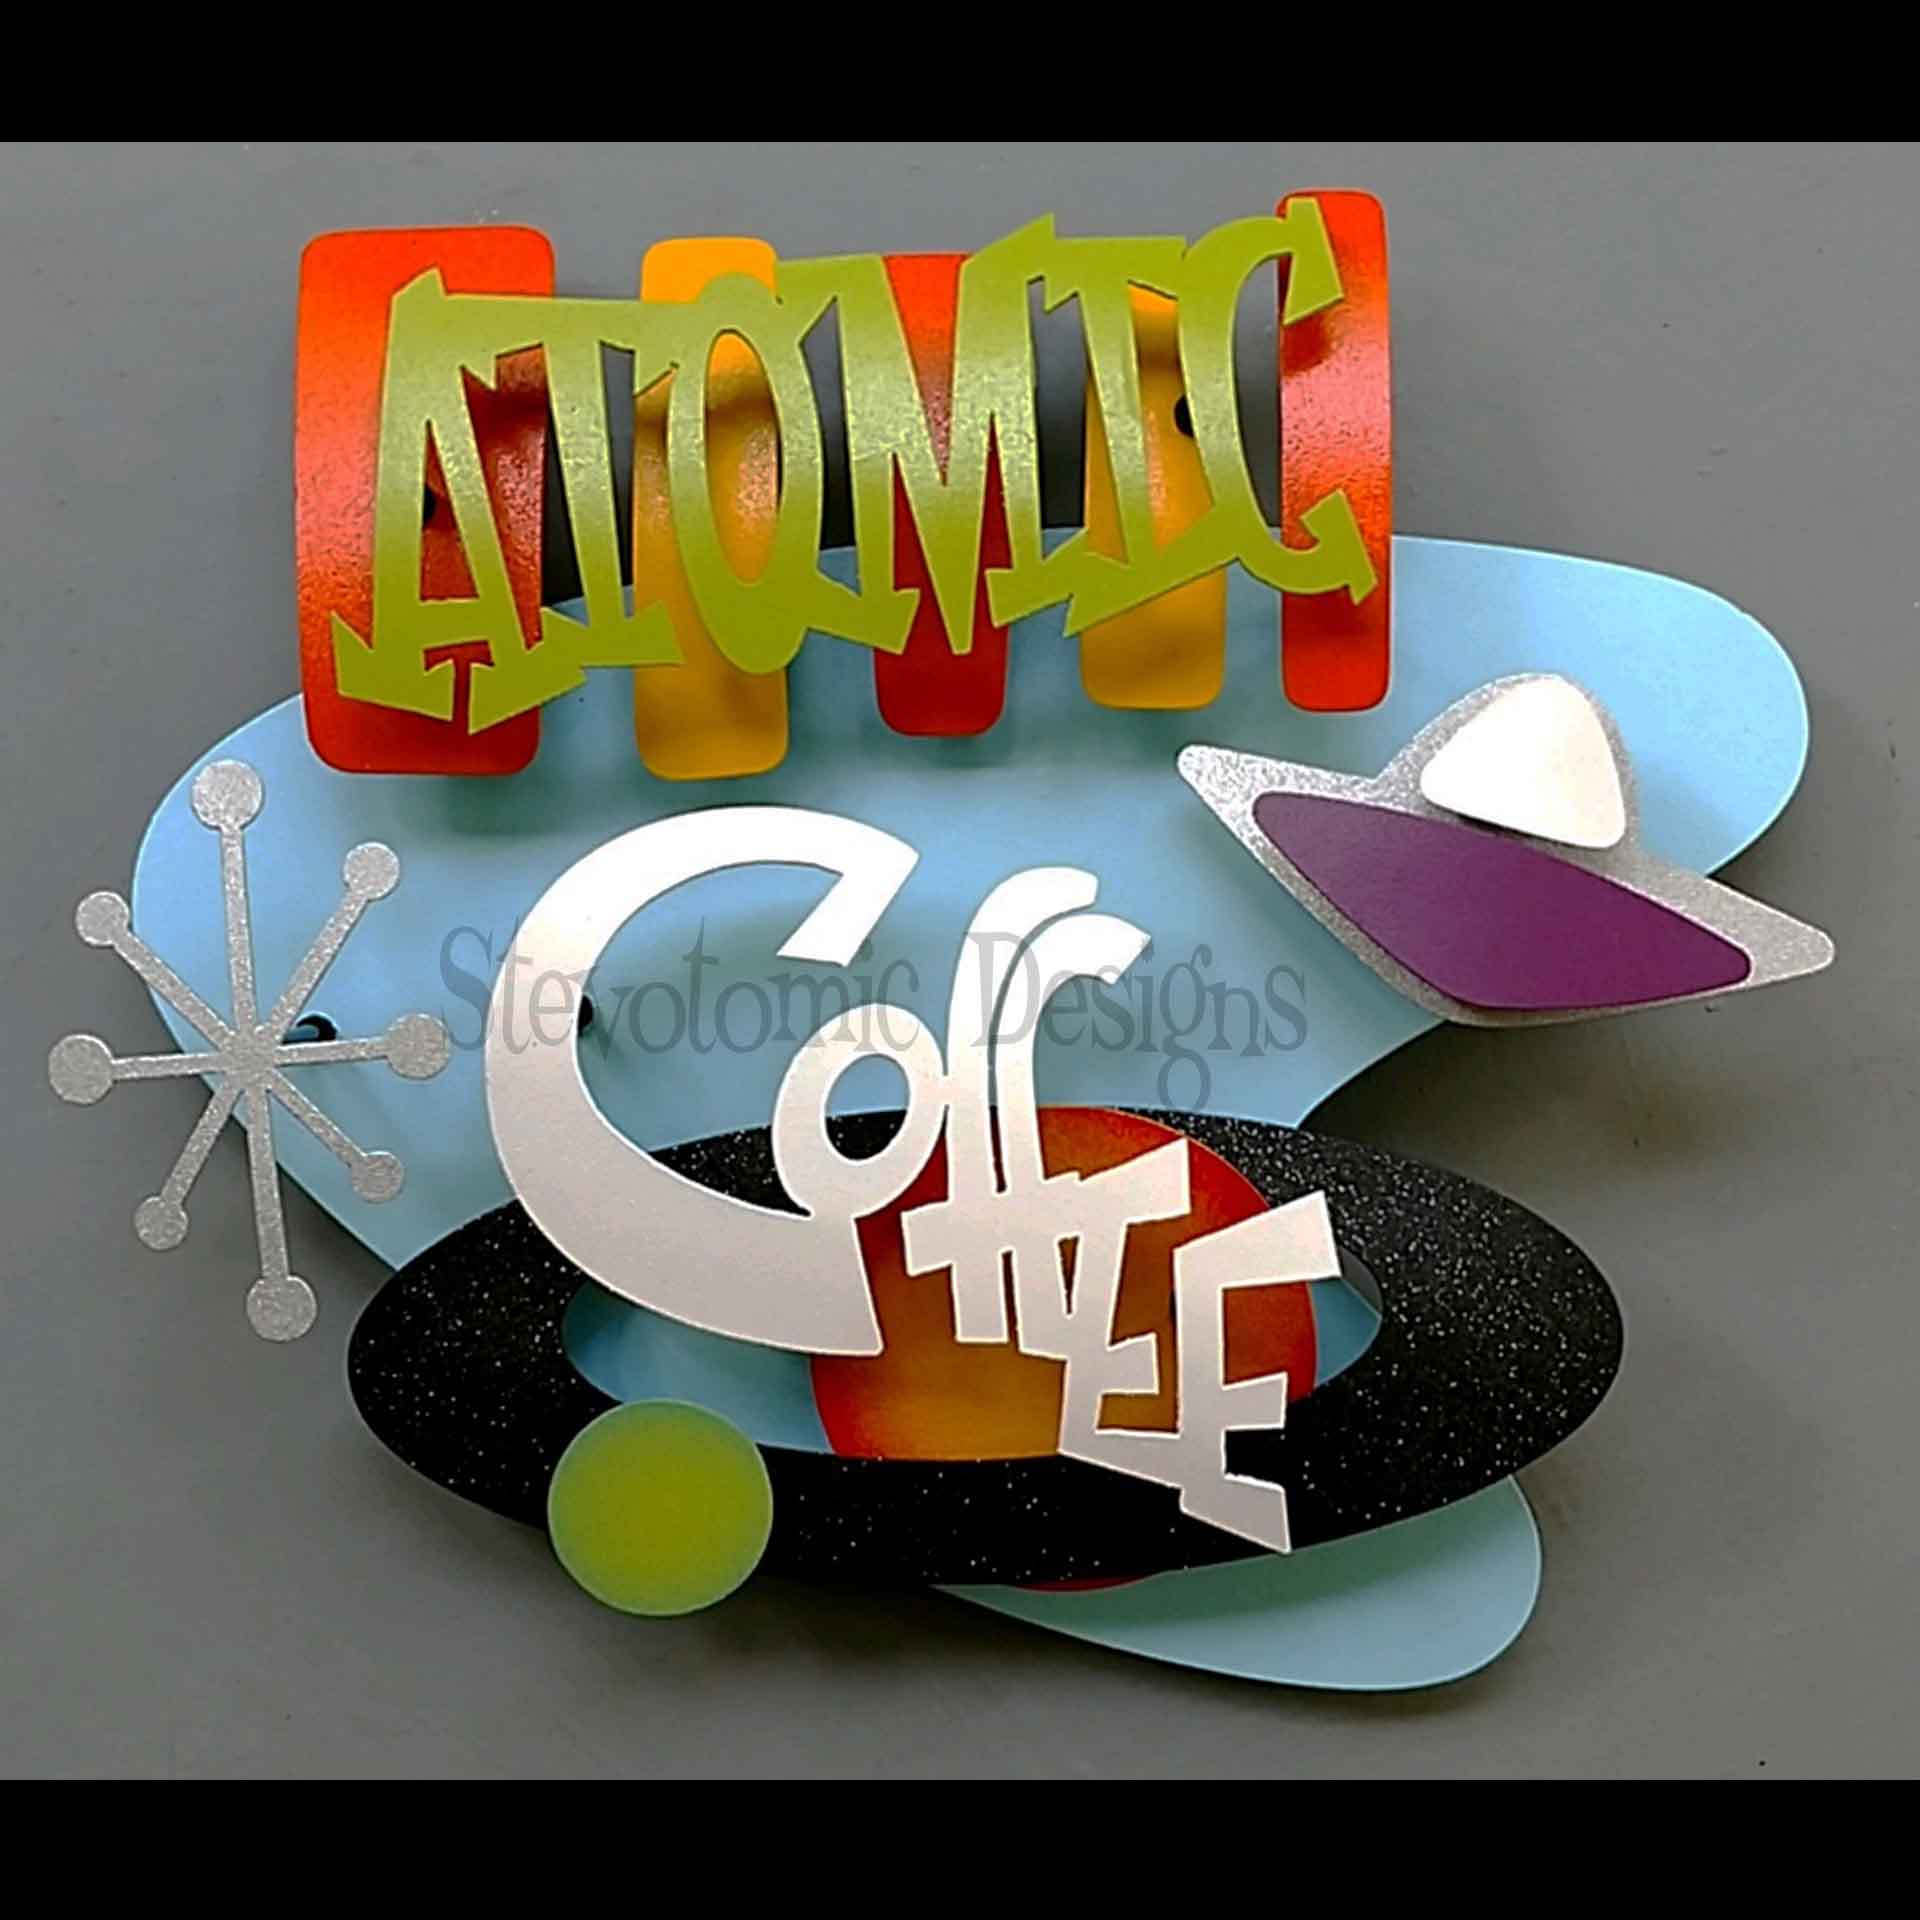 ajb 02 atomic coffee